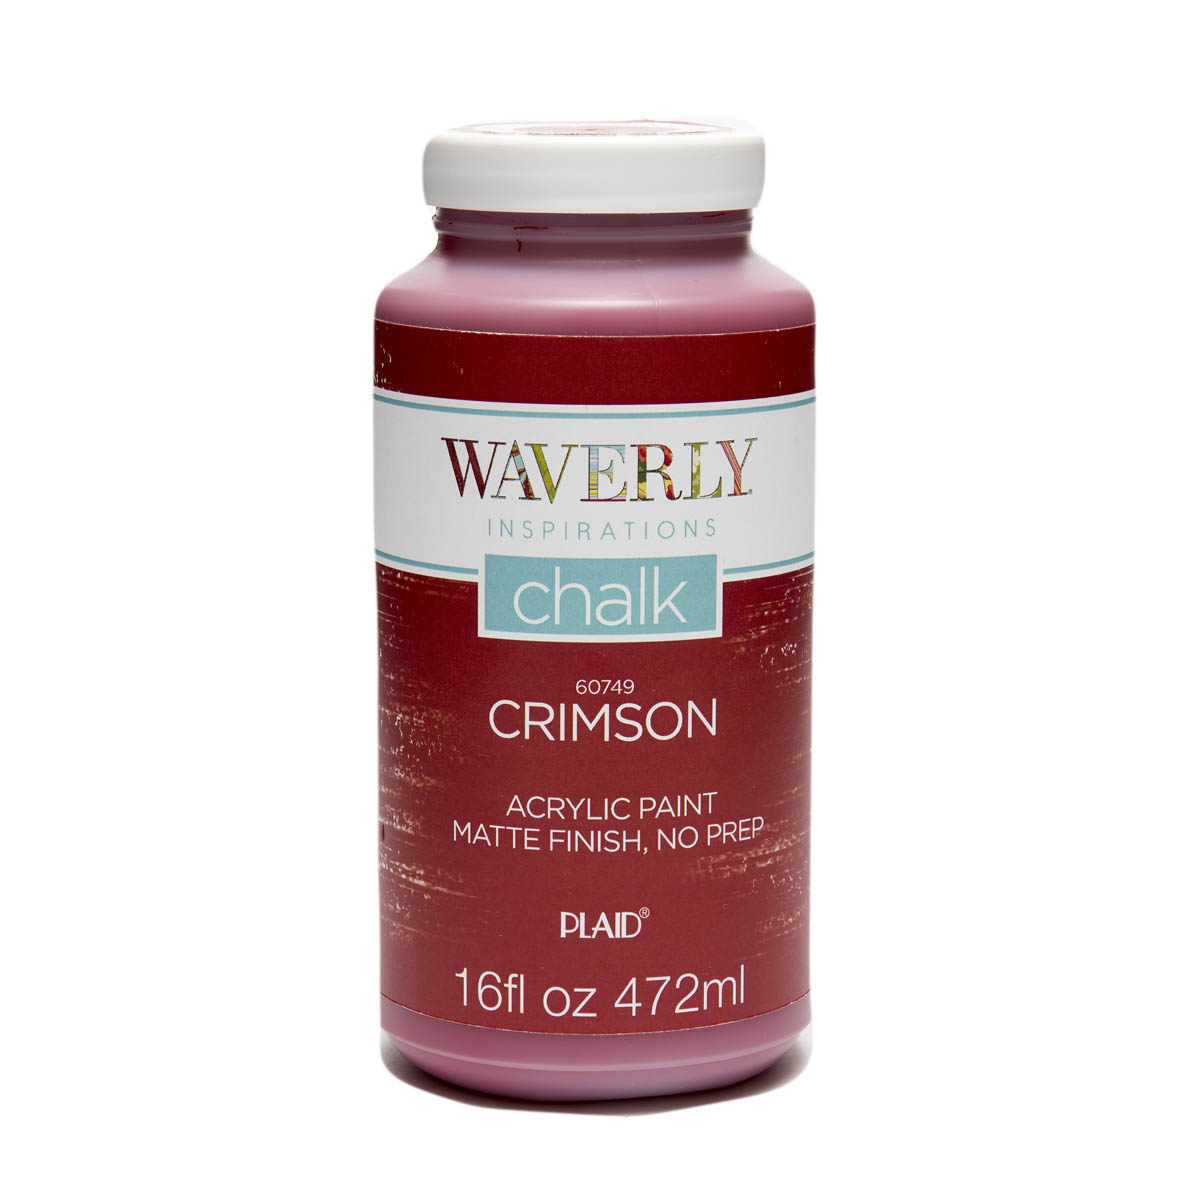 Waverly ® Inspirations Chalk Finish Acrylic Paint - Crimson, 16 oz. - 60749E